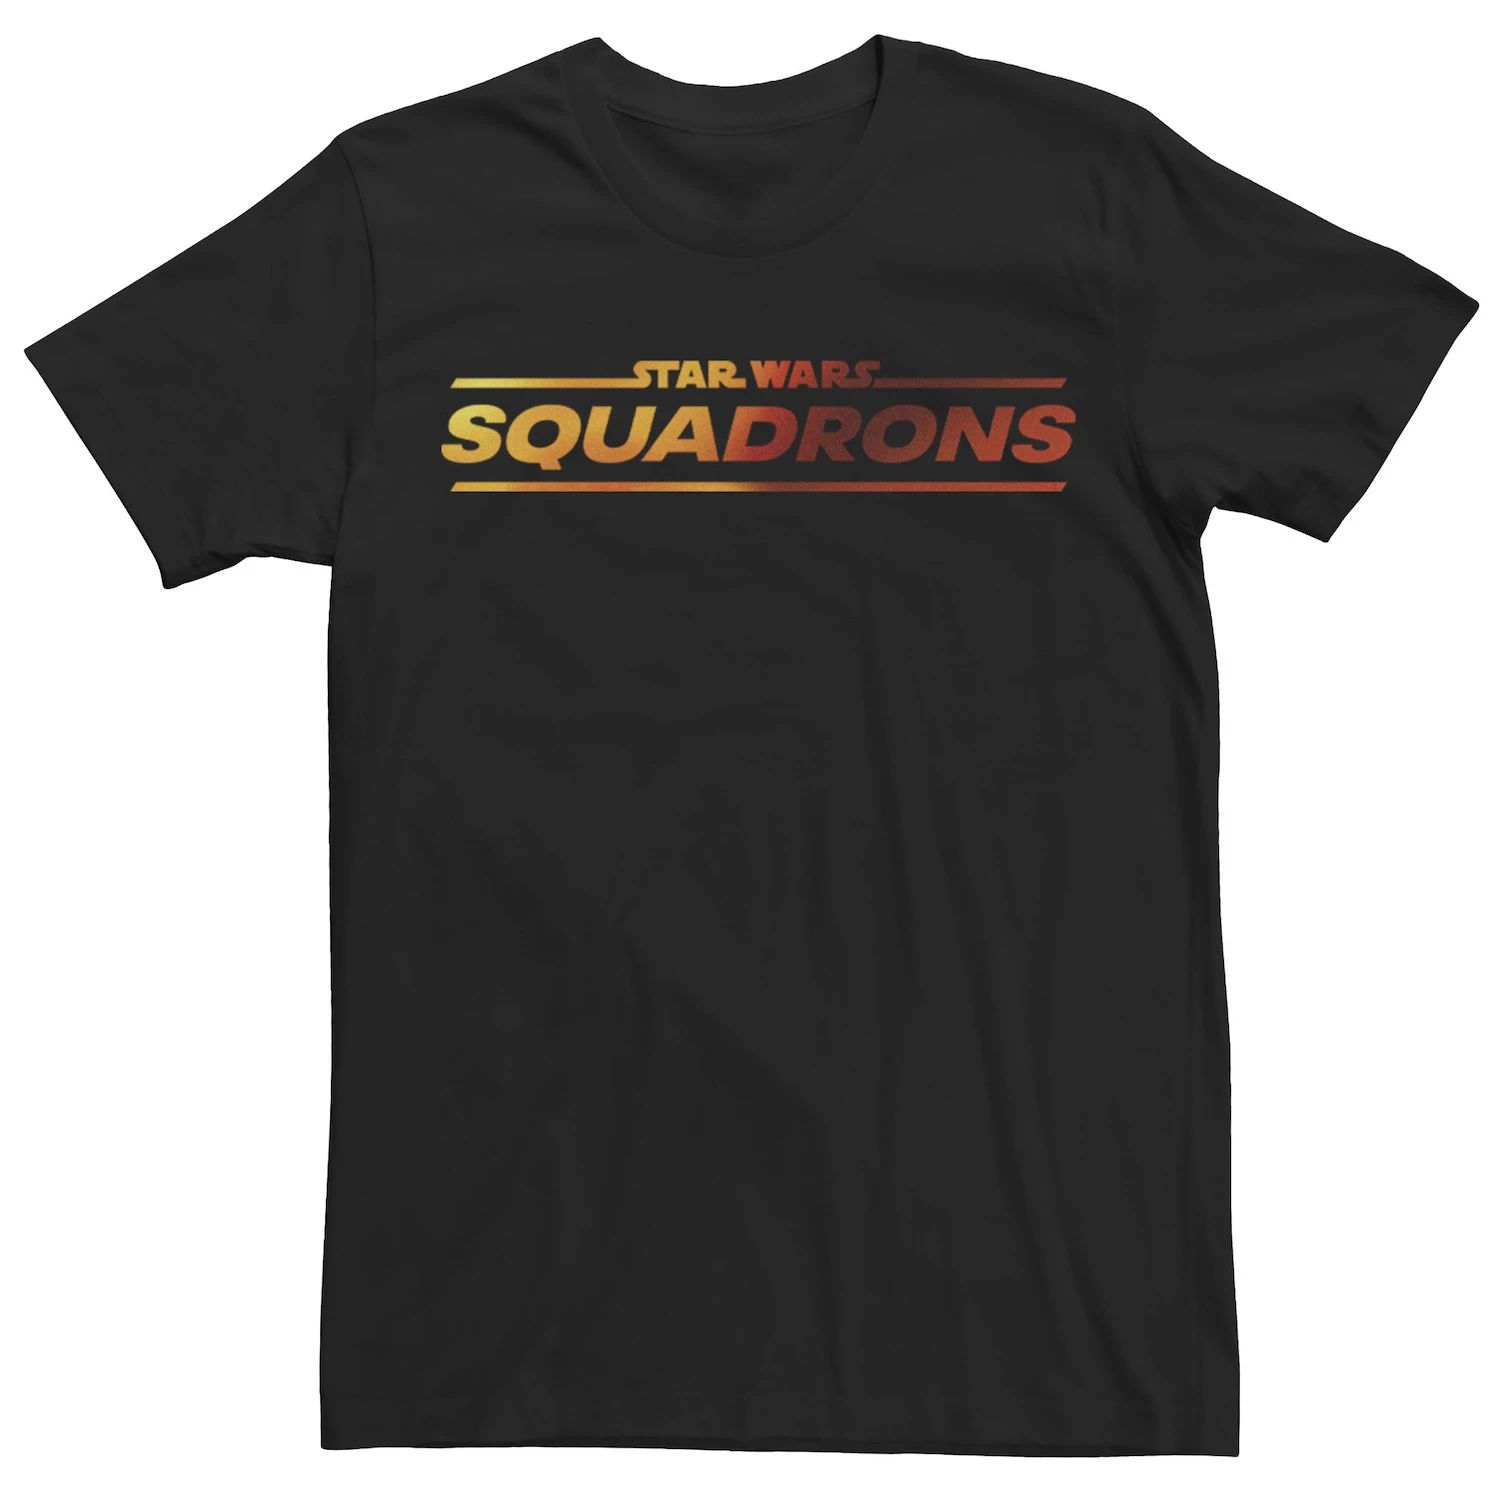 Мужская футболка с логотипом Star Wars: Squadrons Licensed Character игра для sony ps4 star wars squadrons русские субтитры